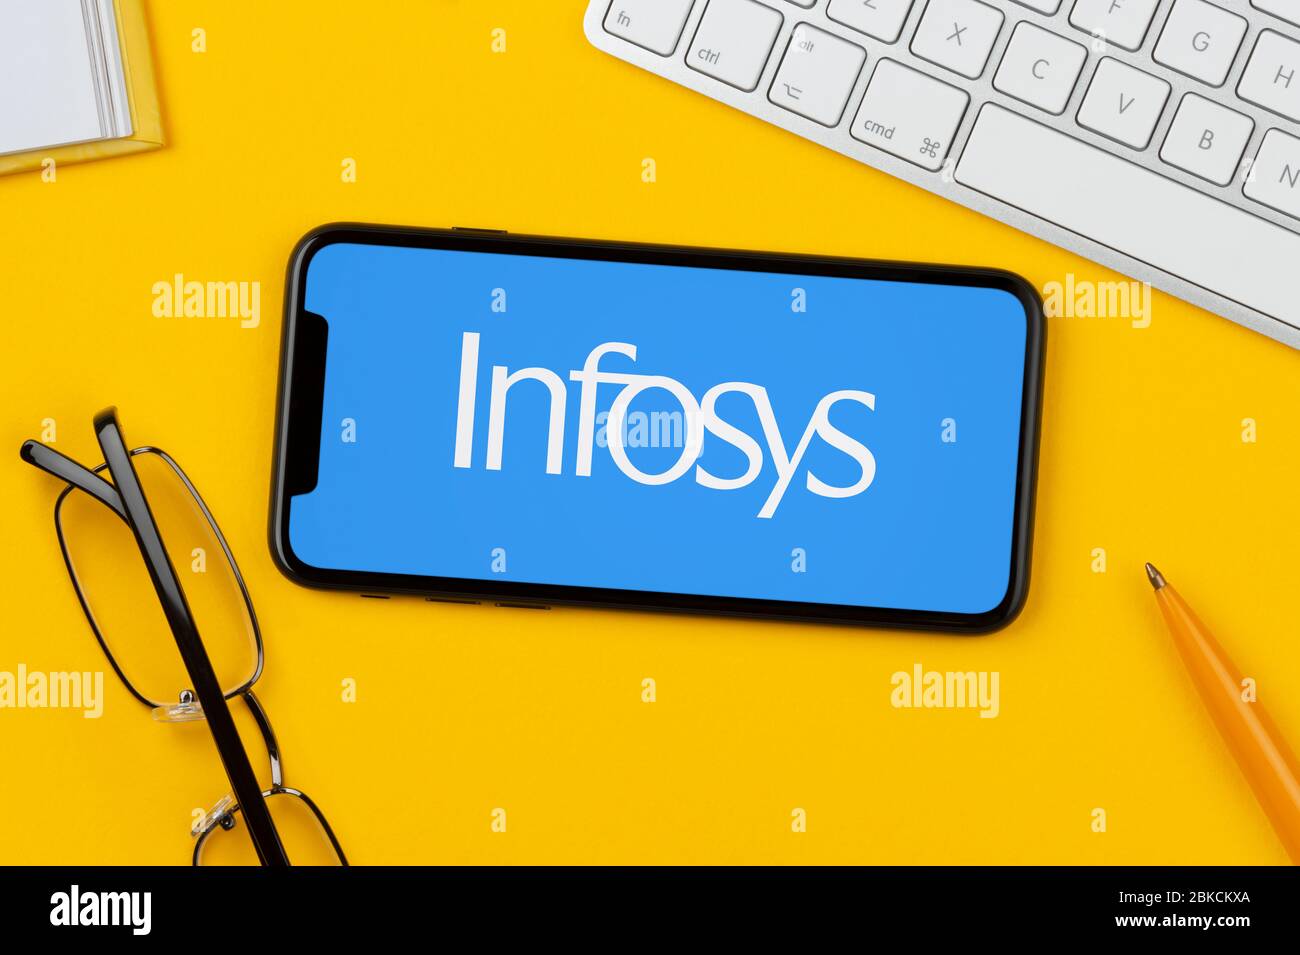 Un smartphone que muestra el logotipo de Infosys se apoya sobre un fondo amarillo junto con un teclado, gafas, lápiz y libro (sólo para uso editorial). Foto de stock